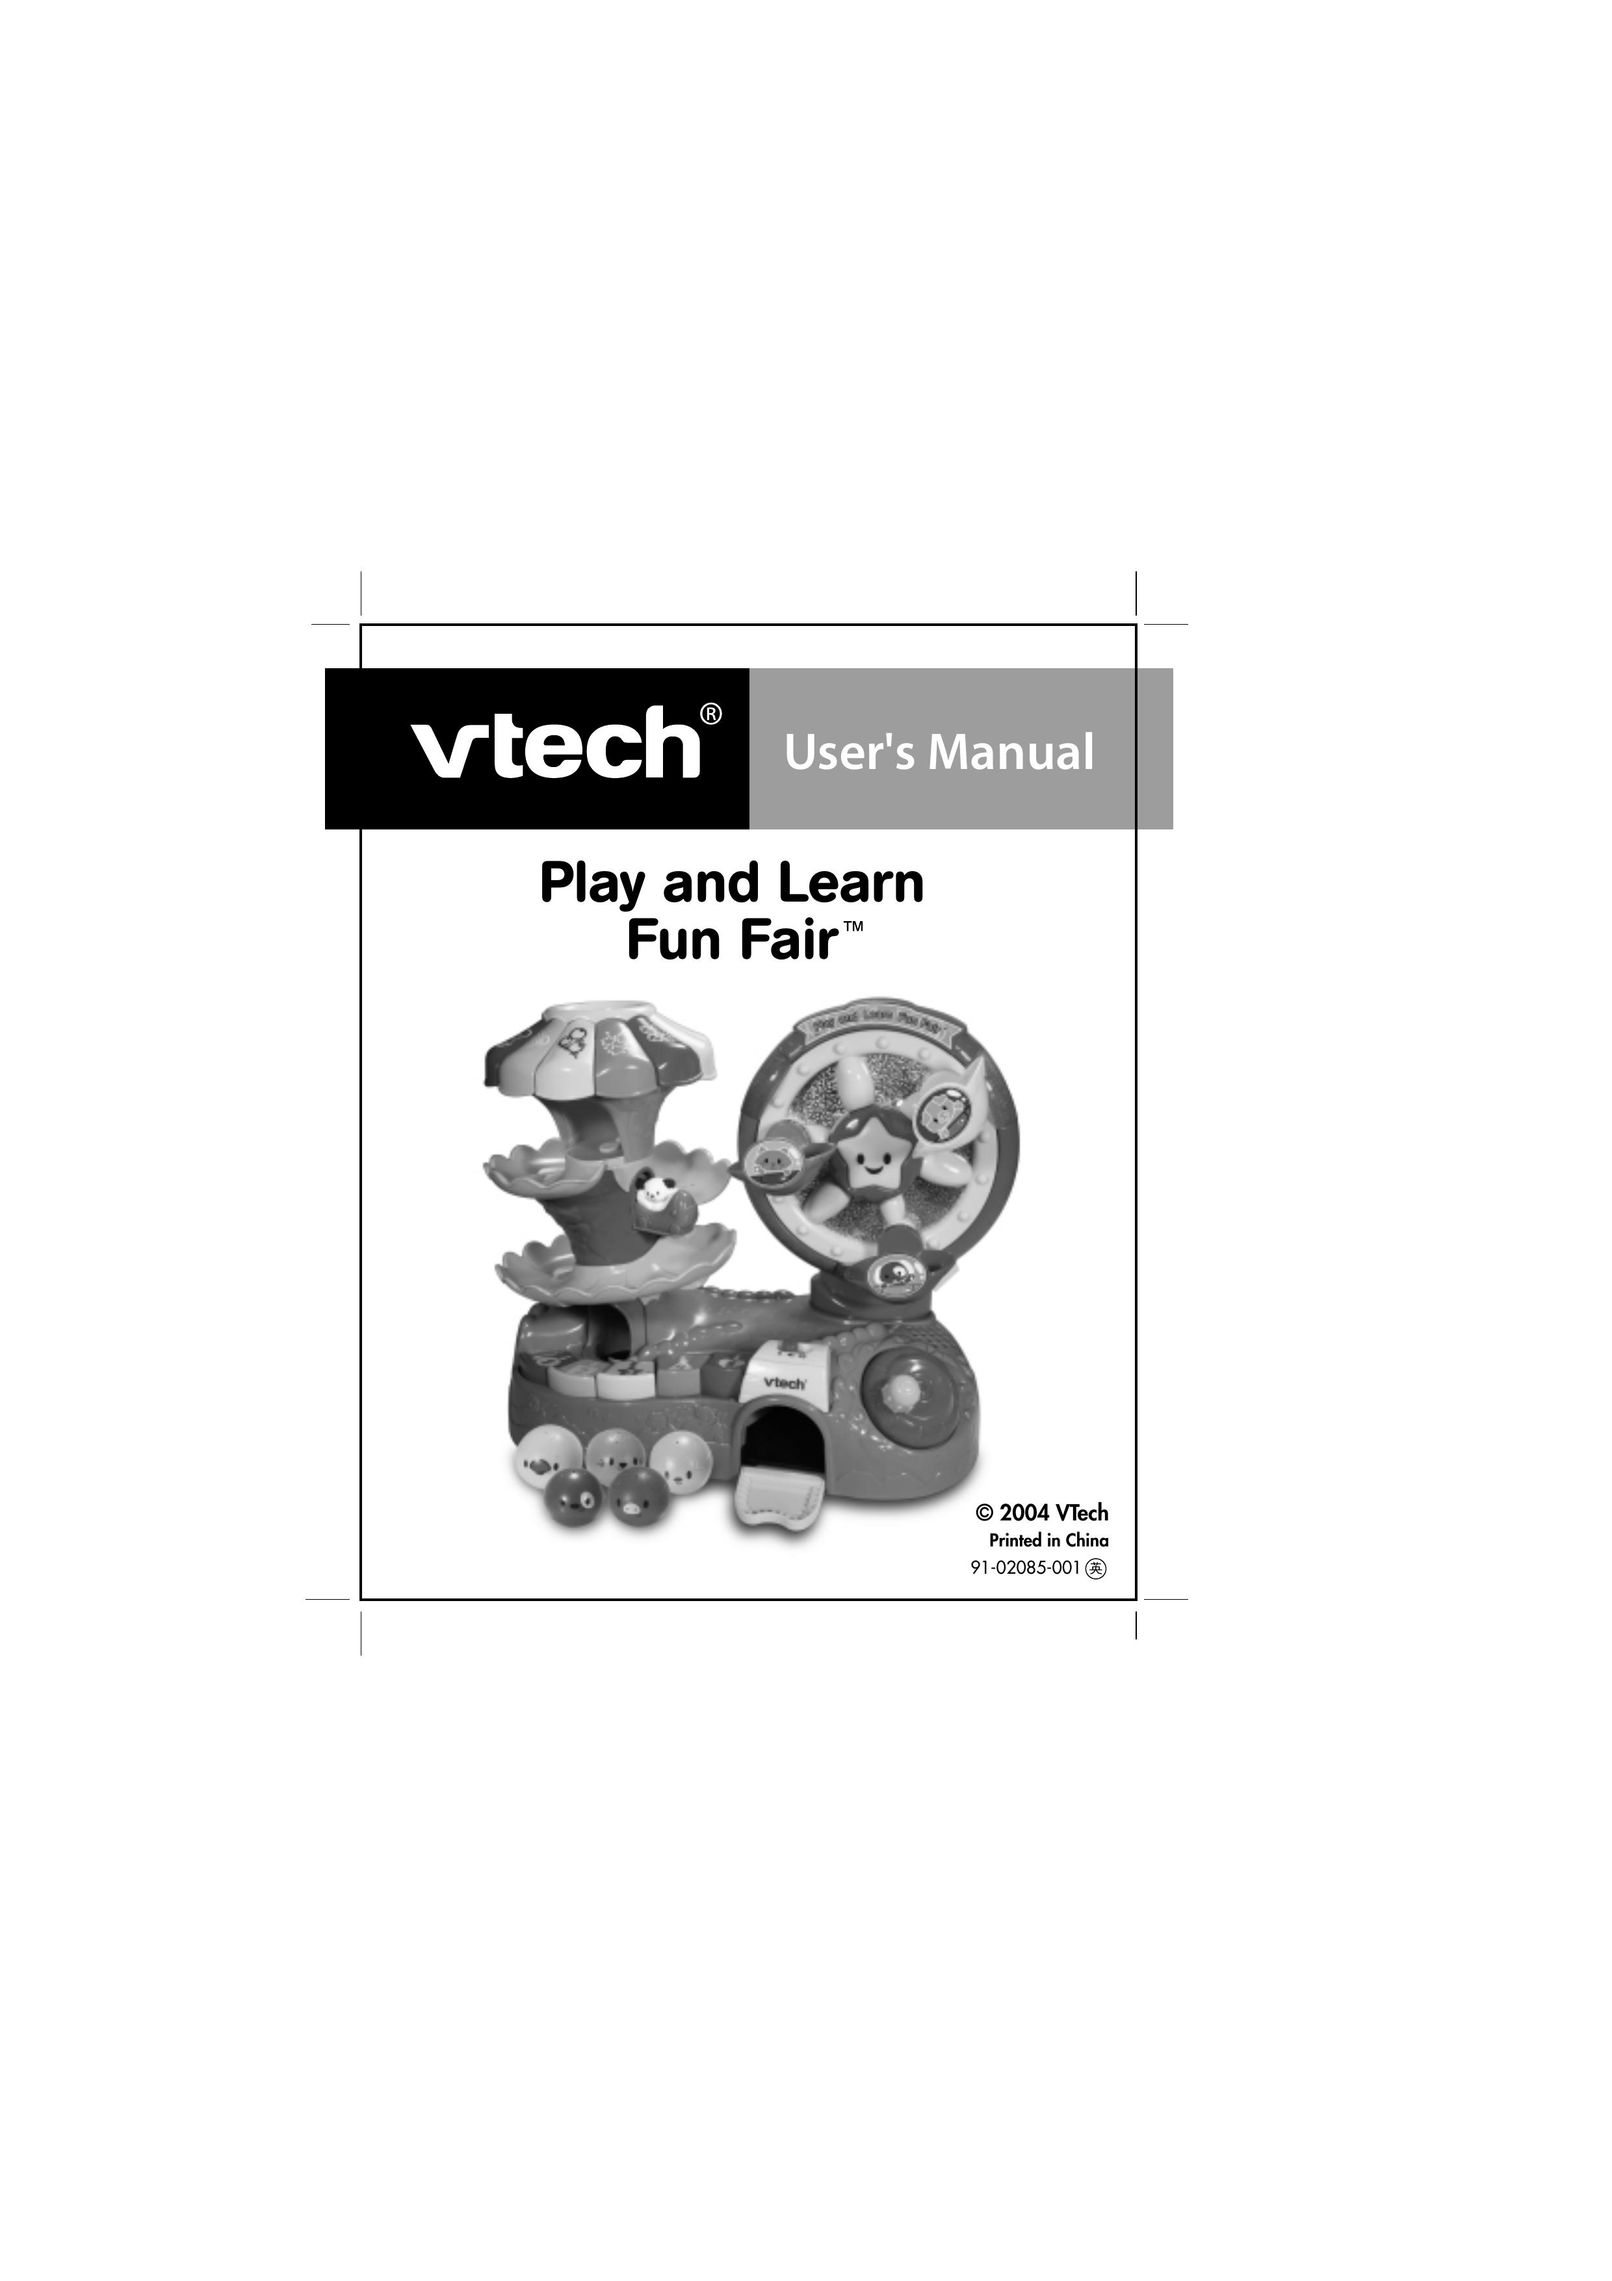 VTech Play and Learn Fun Fair Games User Manual